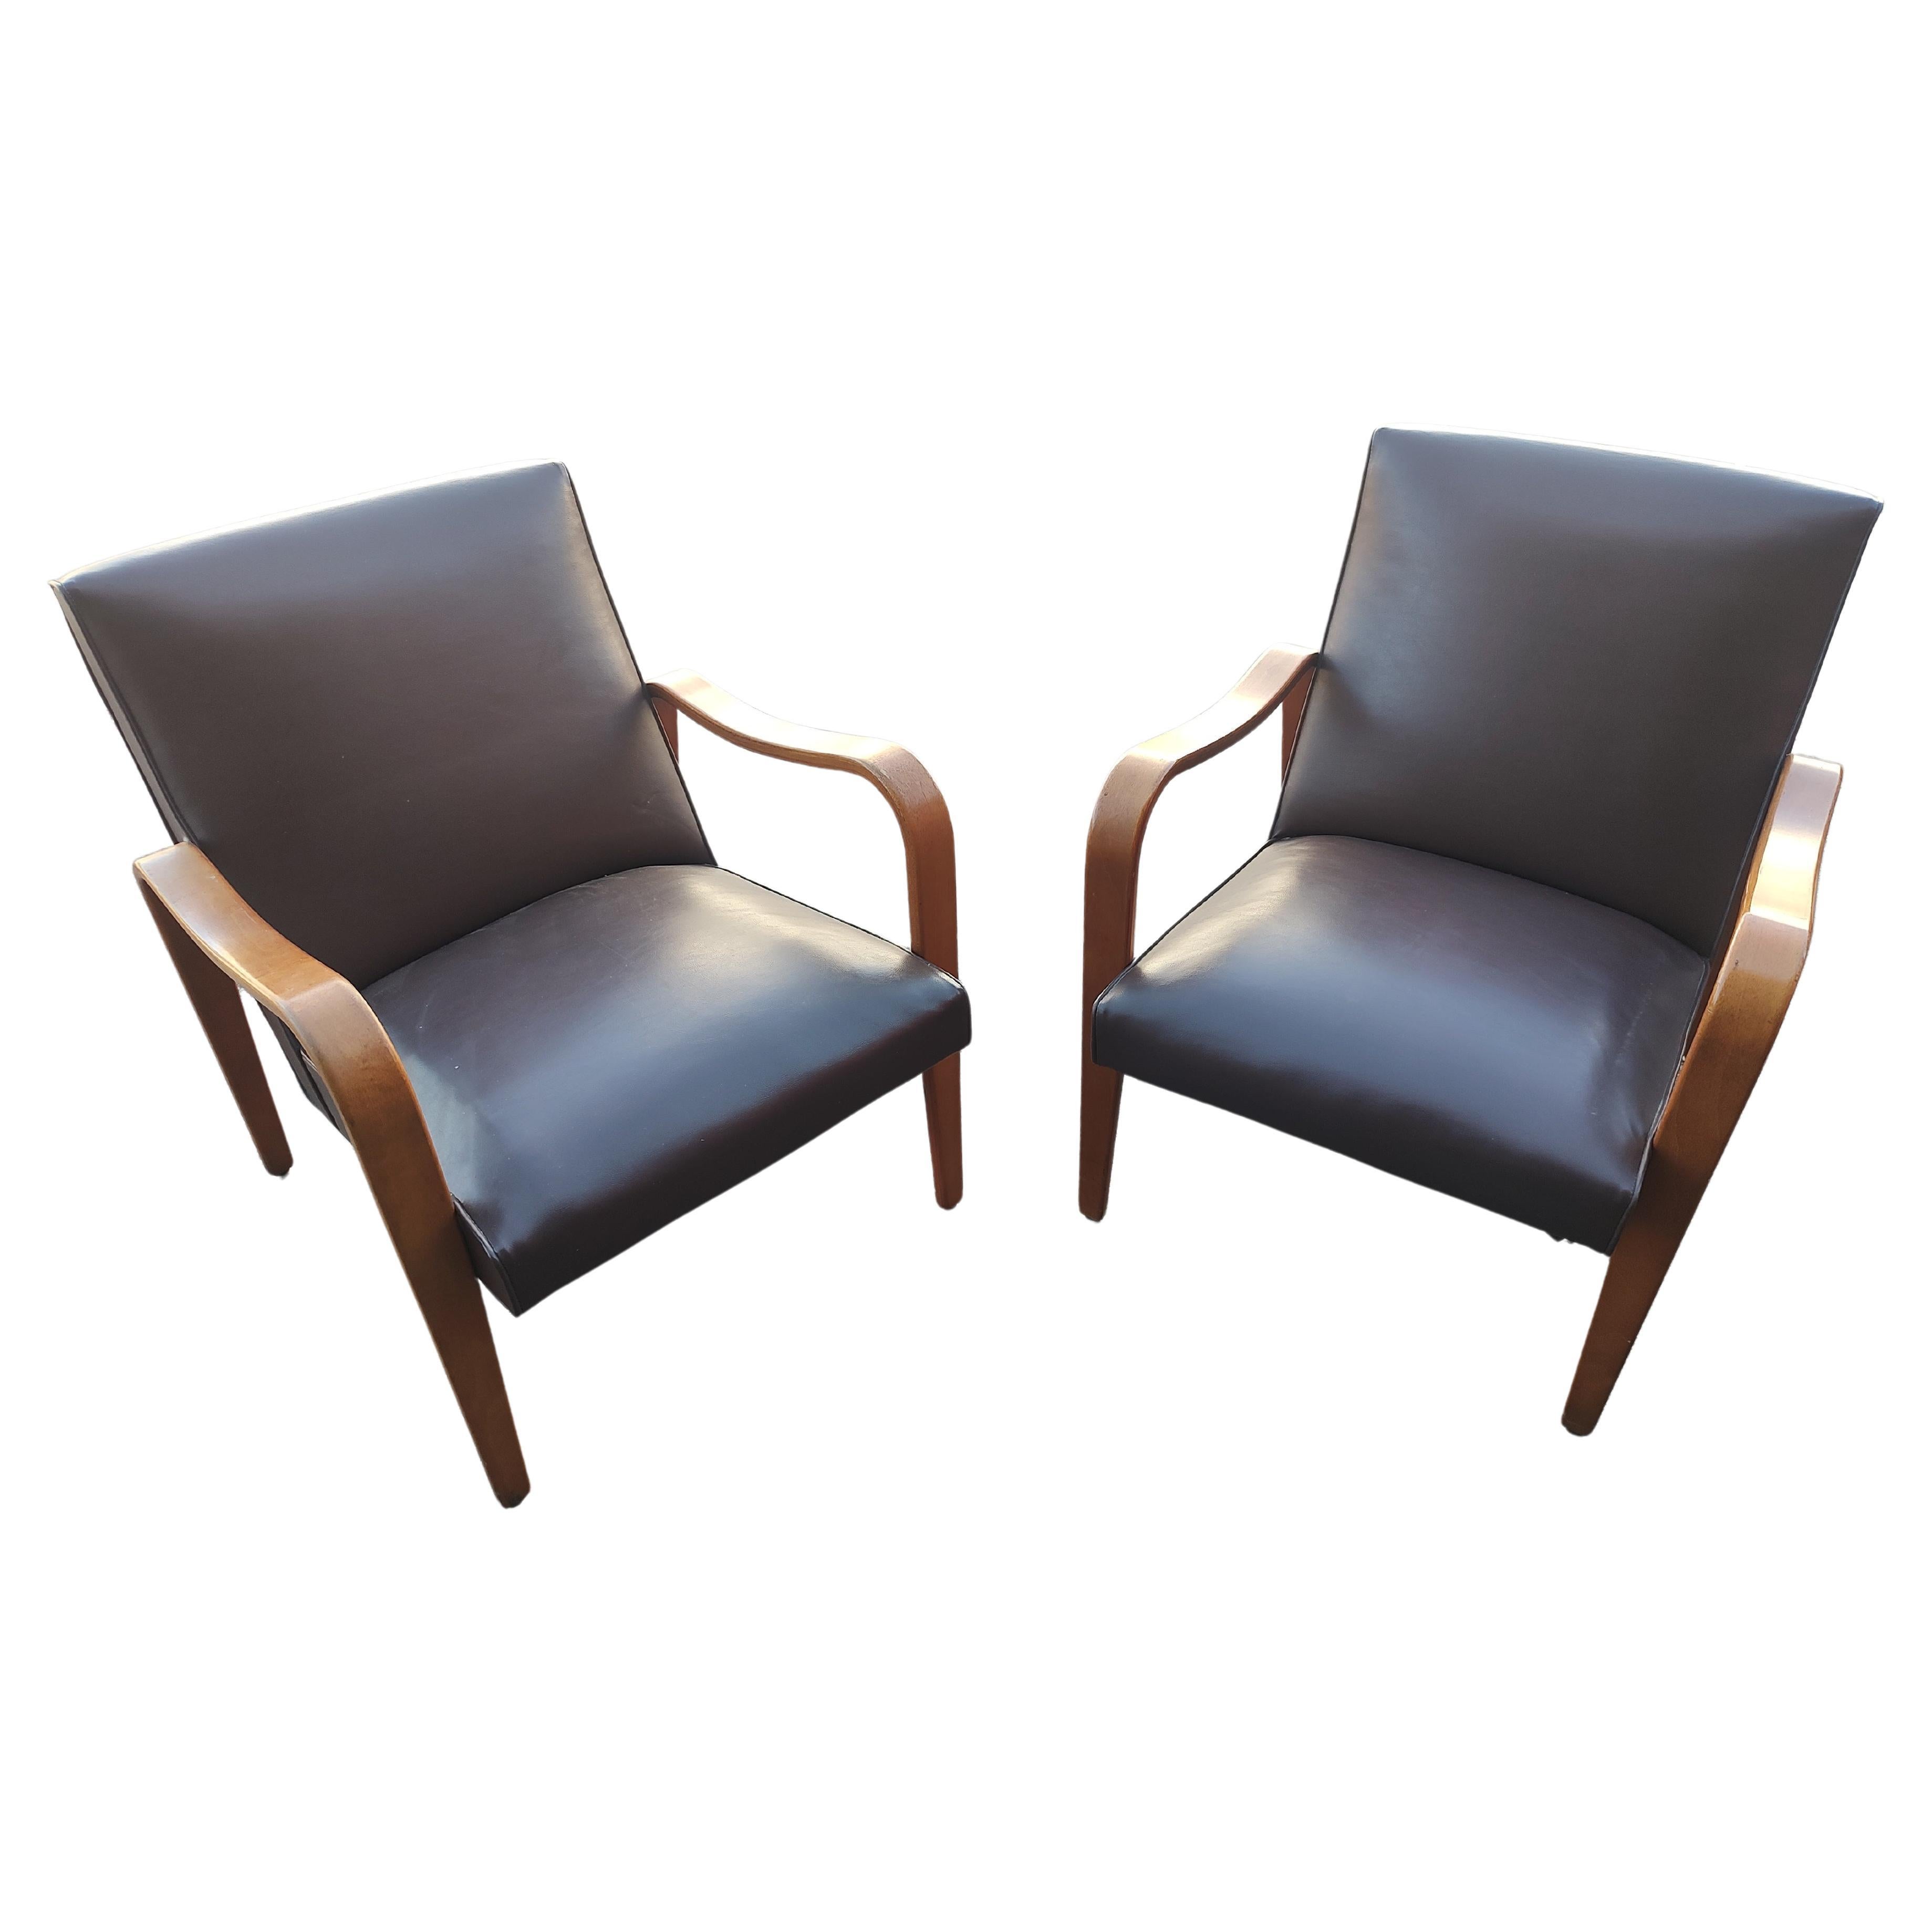 Fabelhaftes Paar Mid Century Modern Sculptural Lounge Chairs von Thonet aus gebogener Birke mit der originalen Naughahyde-Polsterung. In ausgezeichnetem Vintage-Zustand mit minimalen Gebrauchsspuren. Einige kleinere Farbspritzer auf einem Sitz.